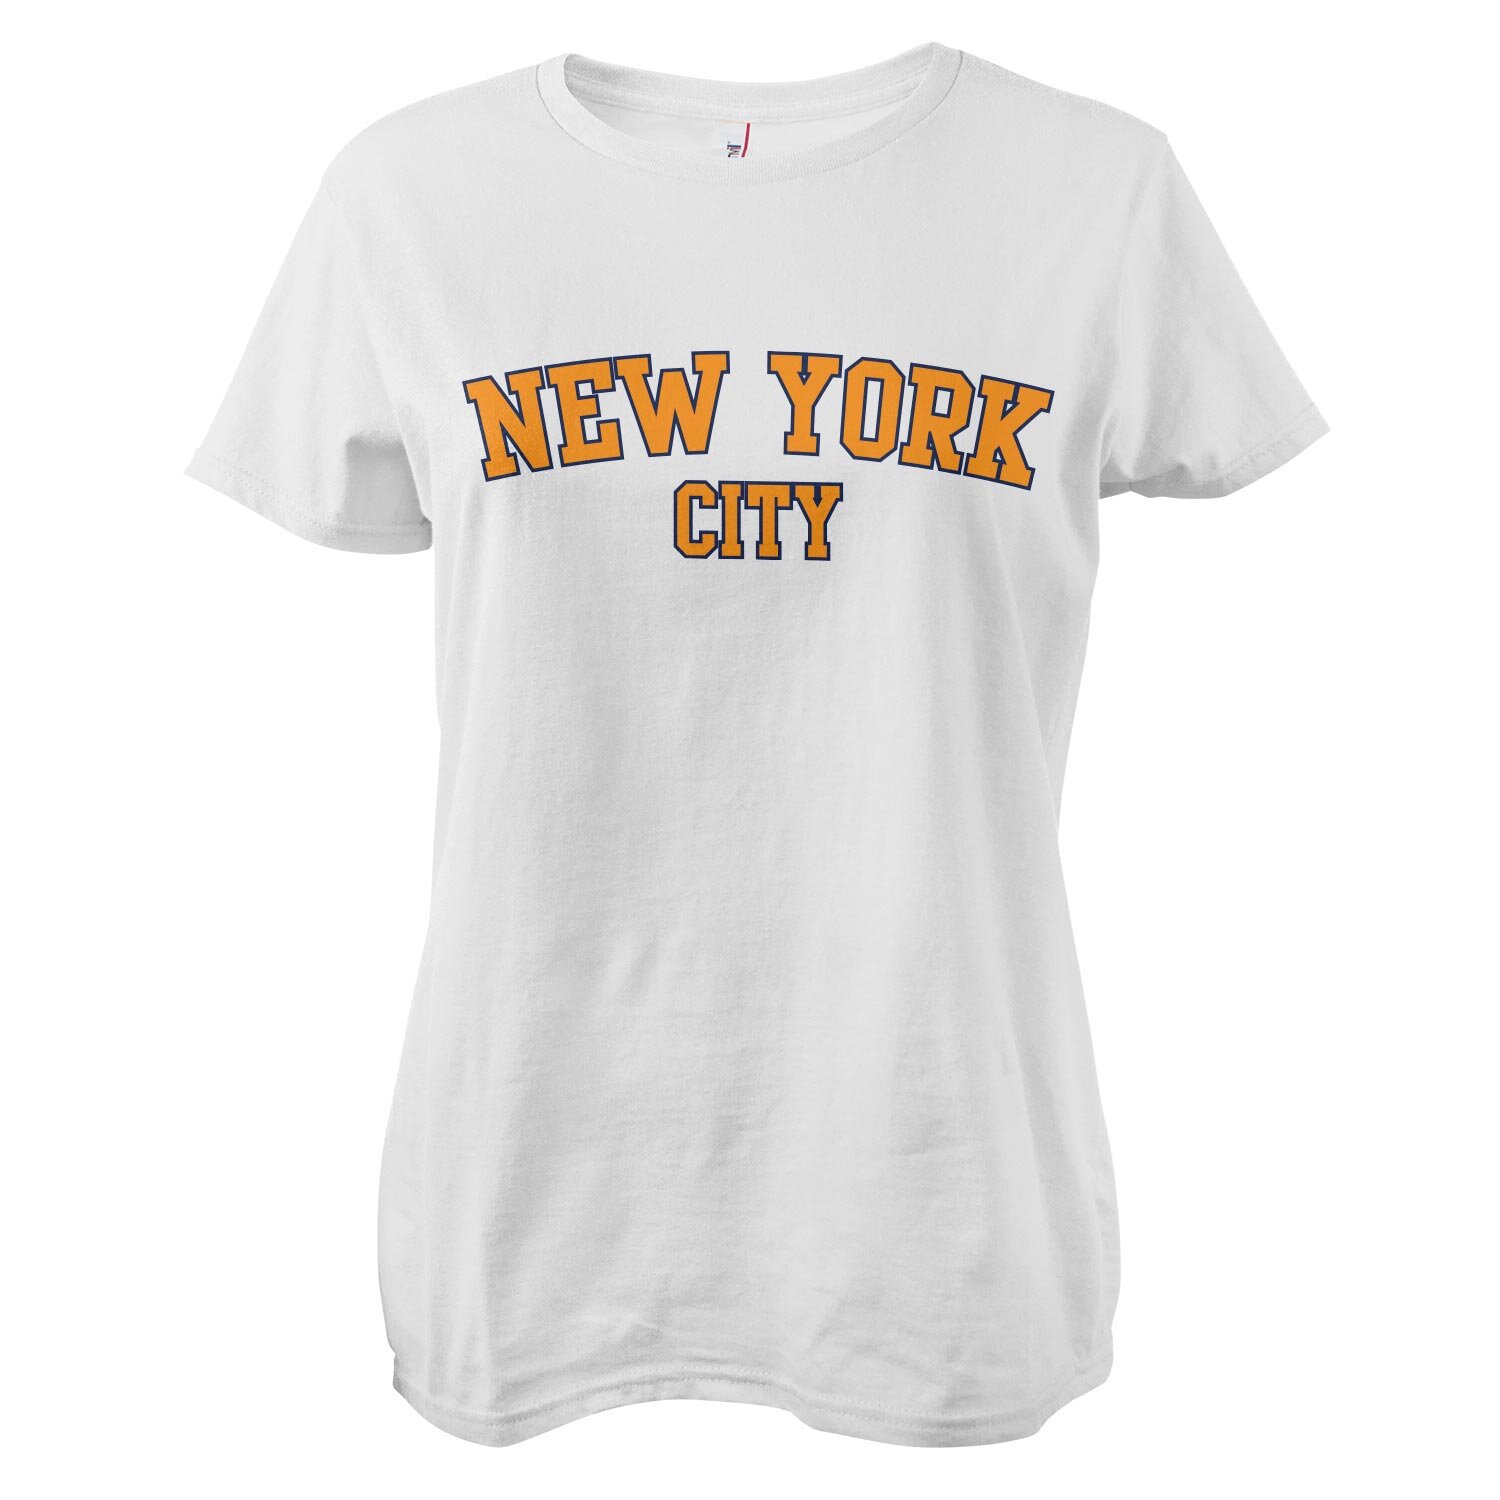 New York City Girly Tee